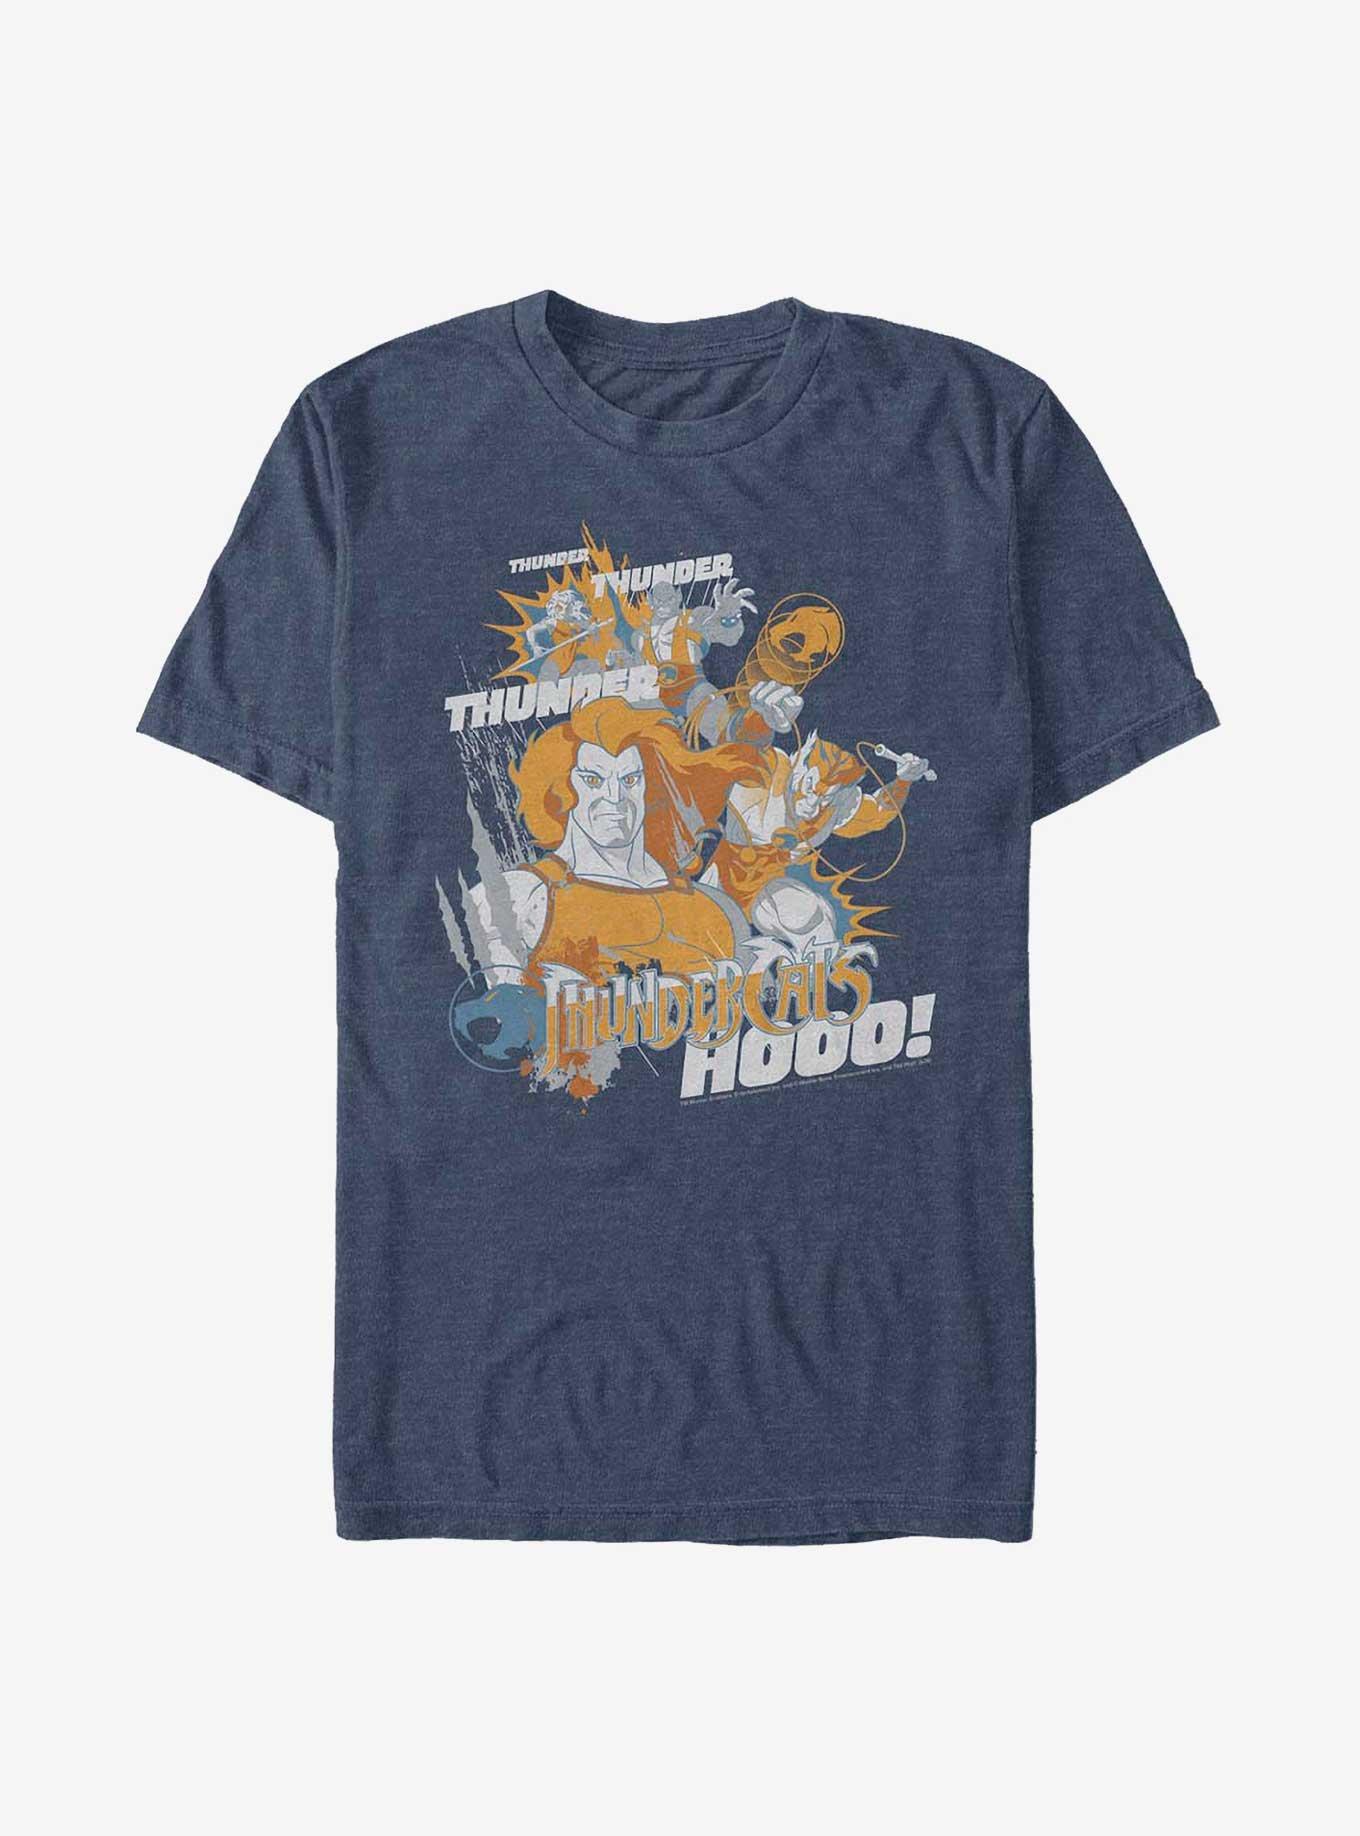 Thundercats Hooo T-Shirt, NAVY HTR, hi-res